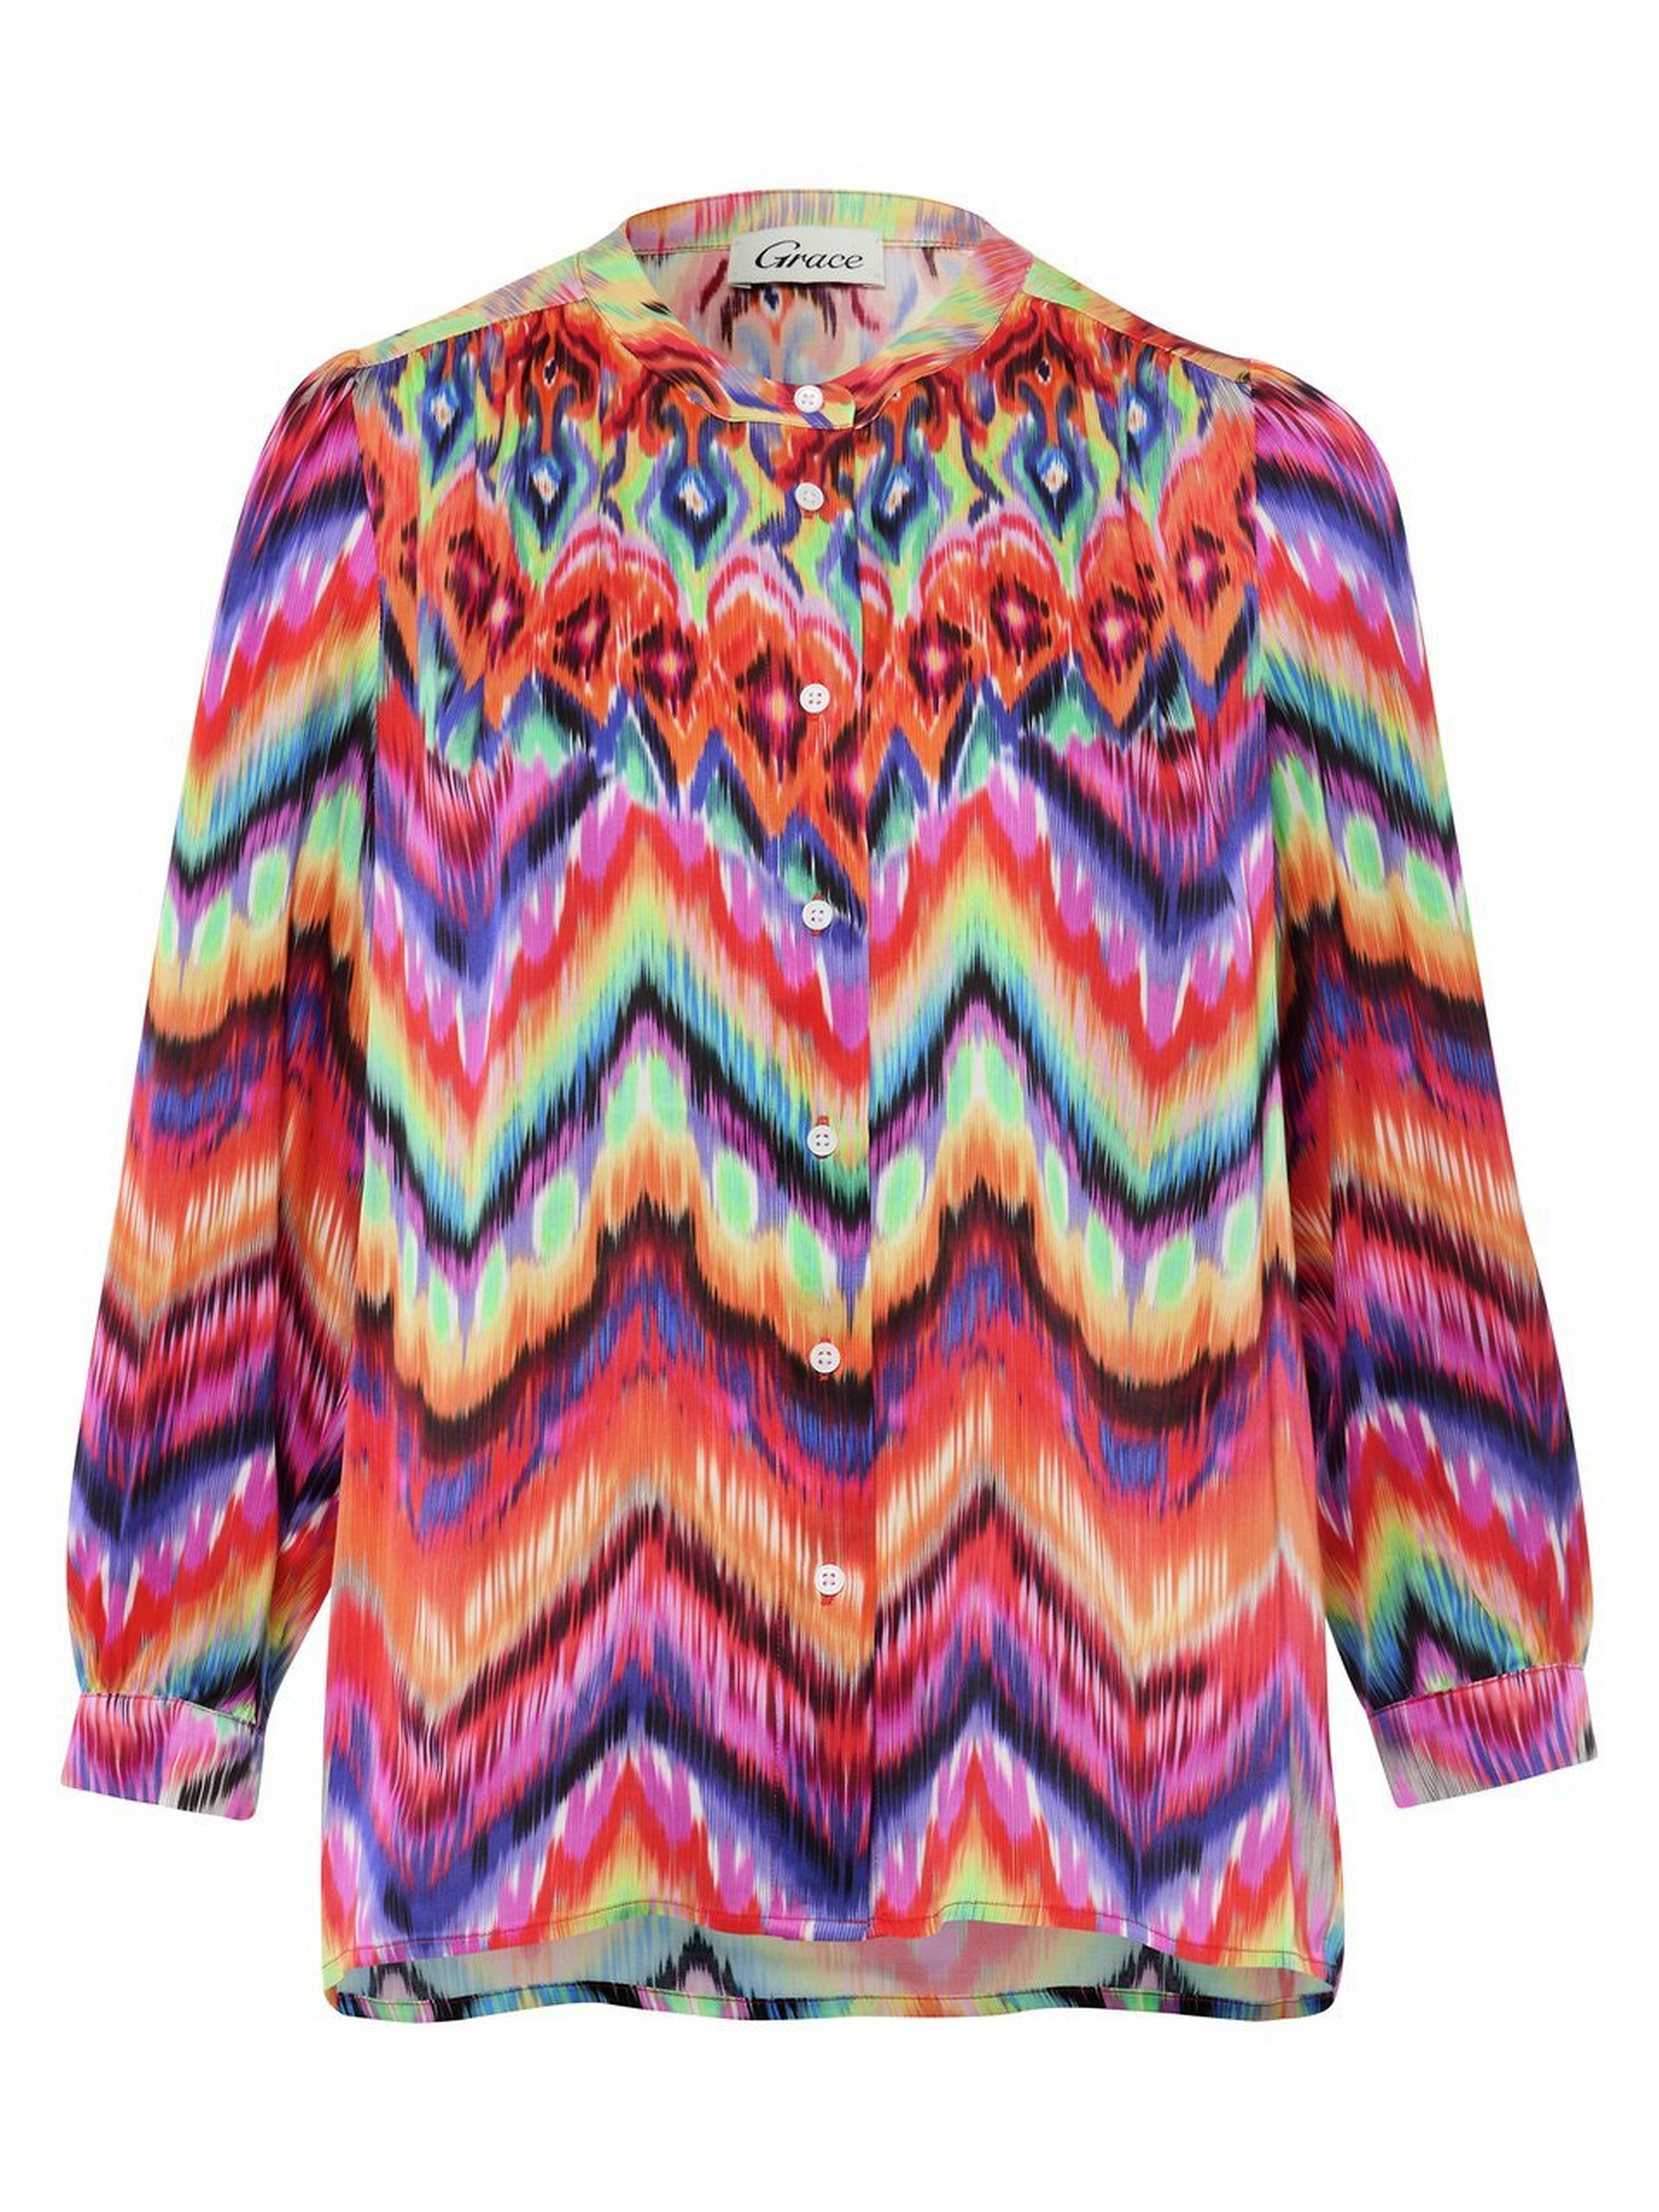 Satijnen blouse Van Grace multicolour